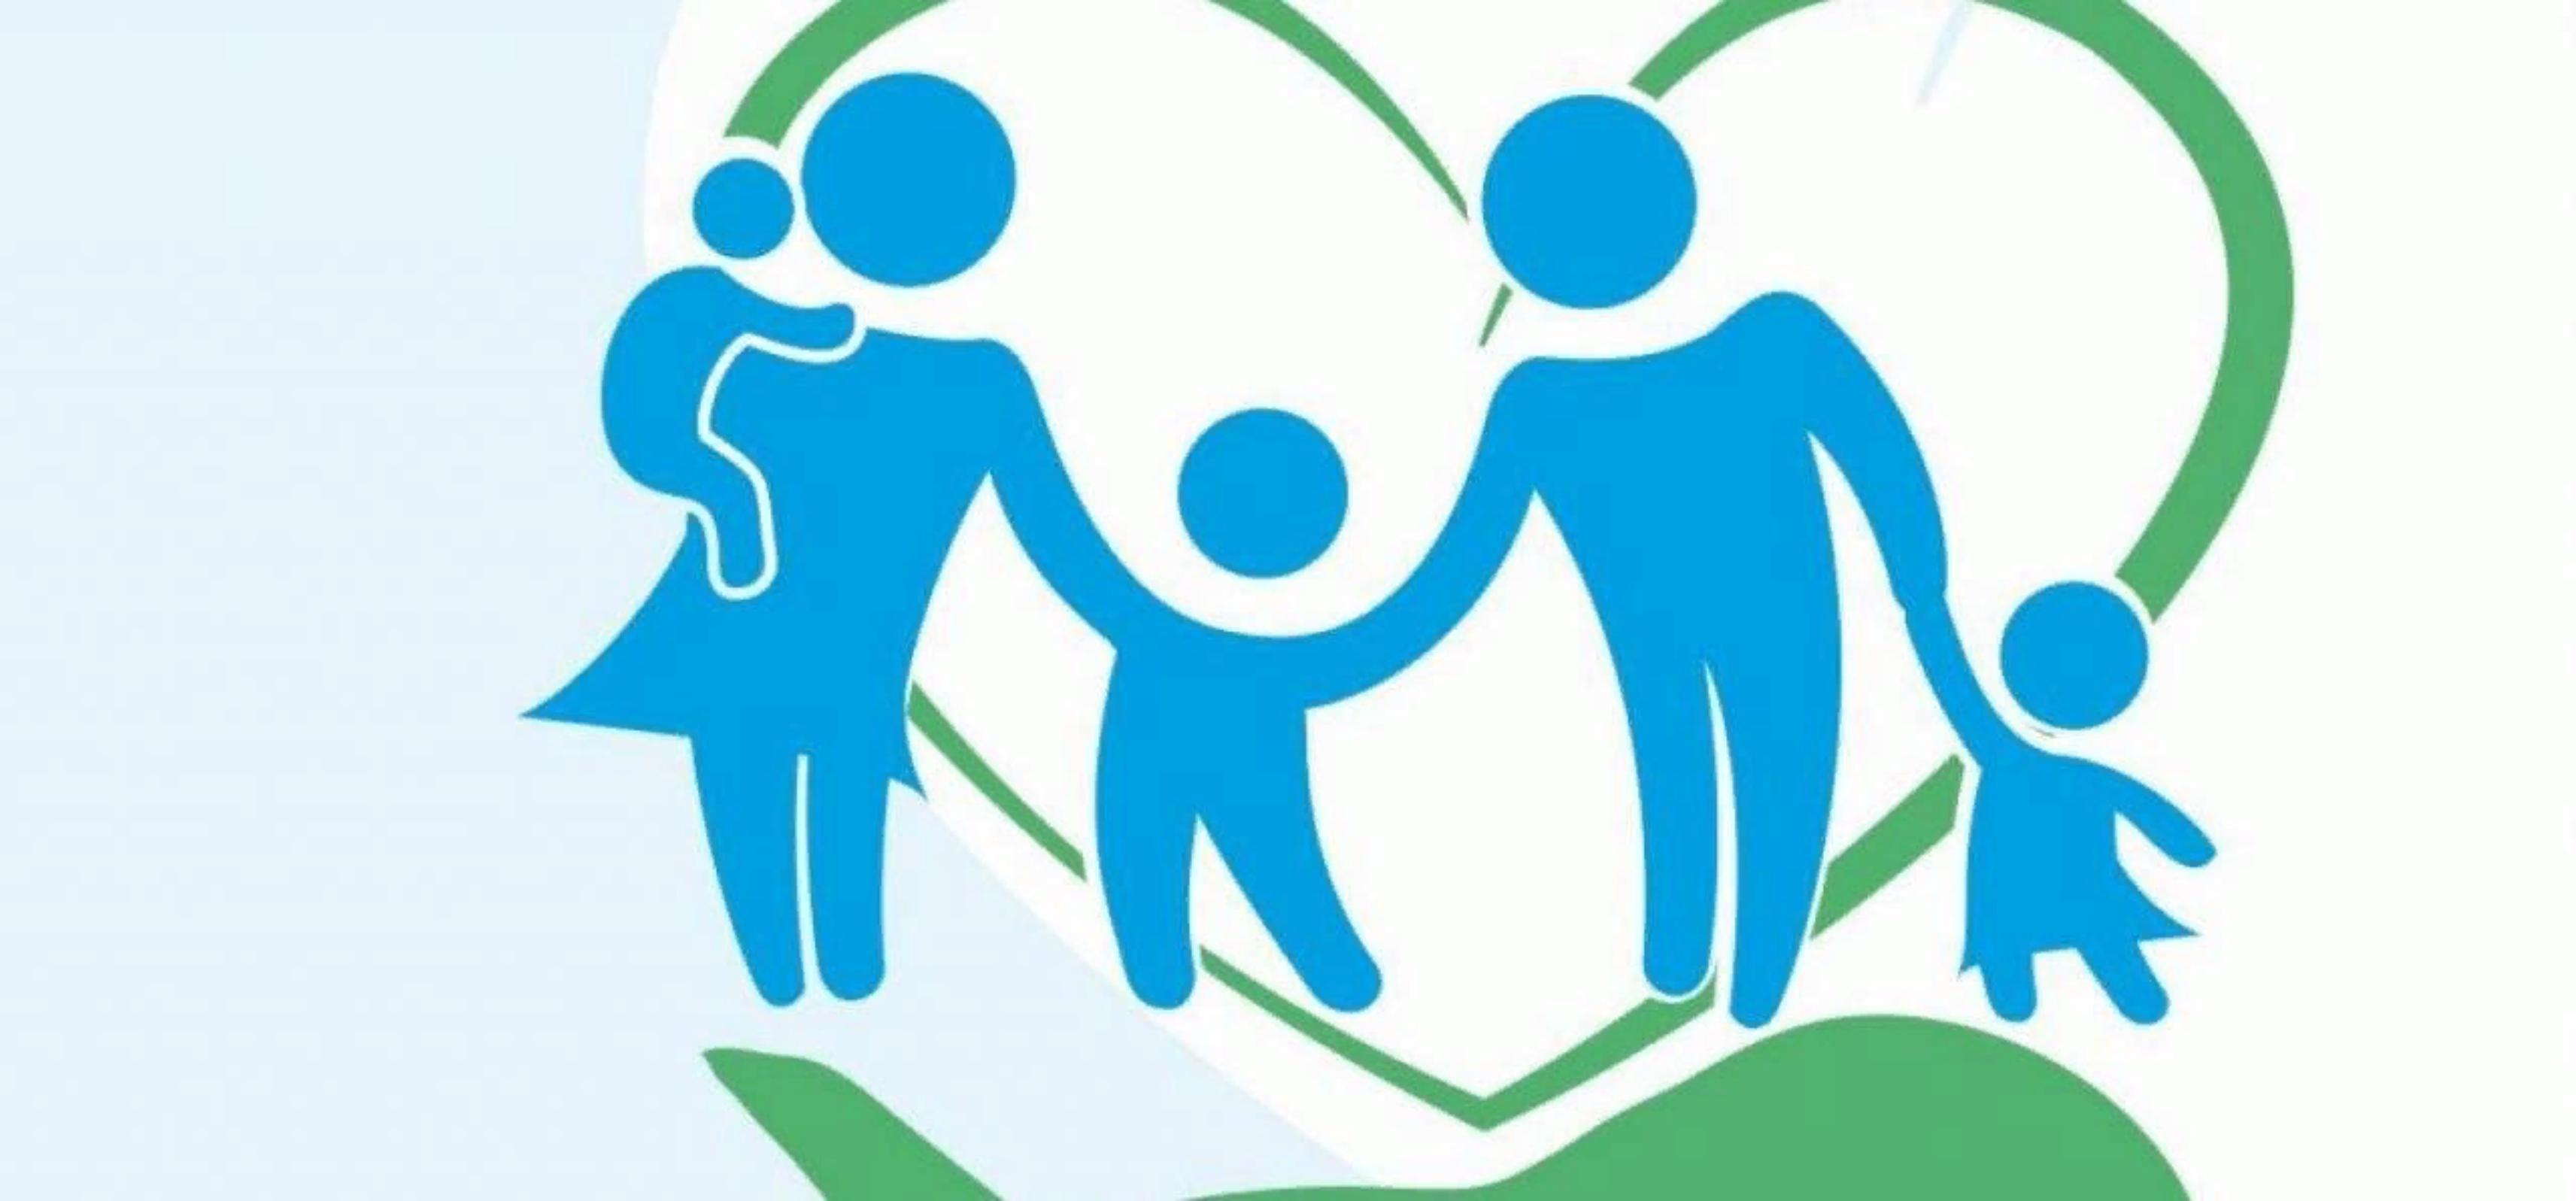 Поддерживаем социальные проекты. Семья логотип. Эмблема социальной работы. Социальная поддержка семей. Социальная защита семей с детьми.